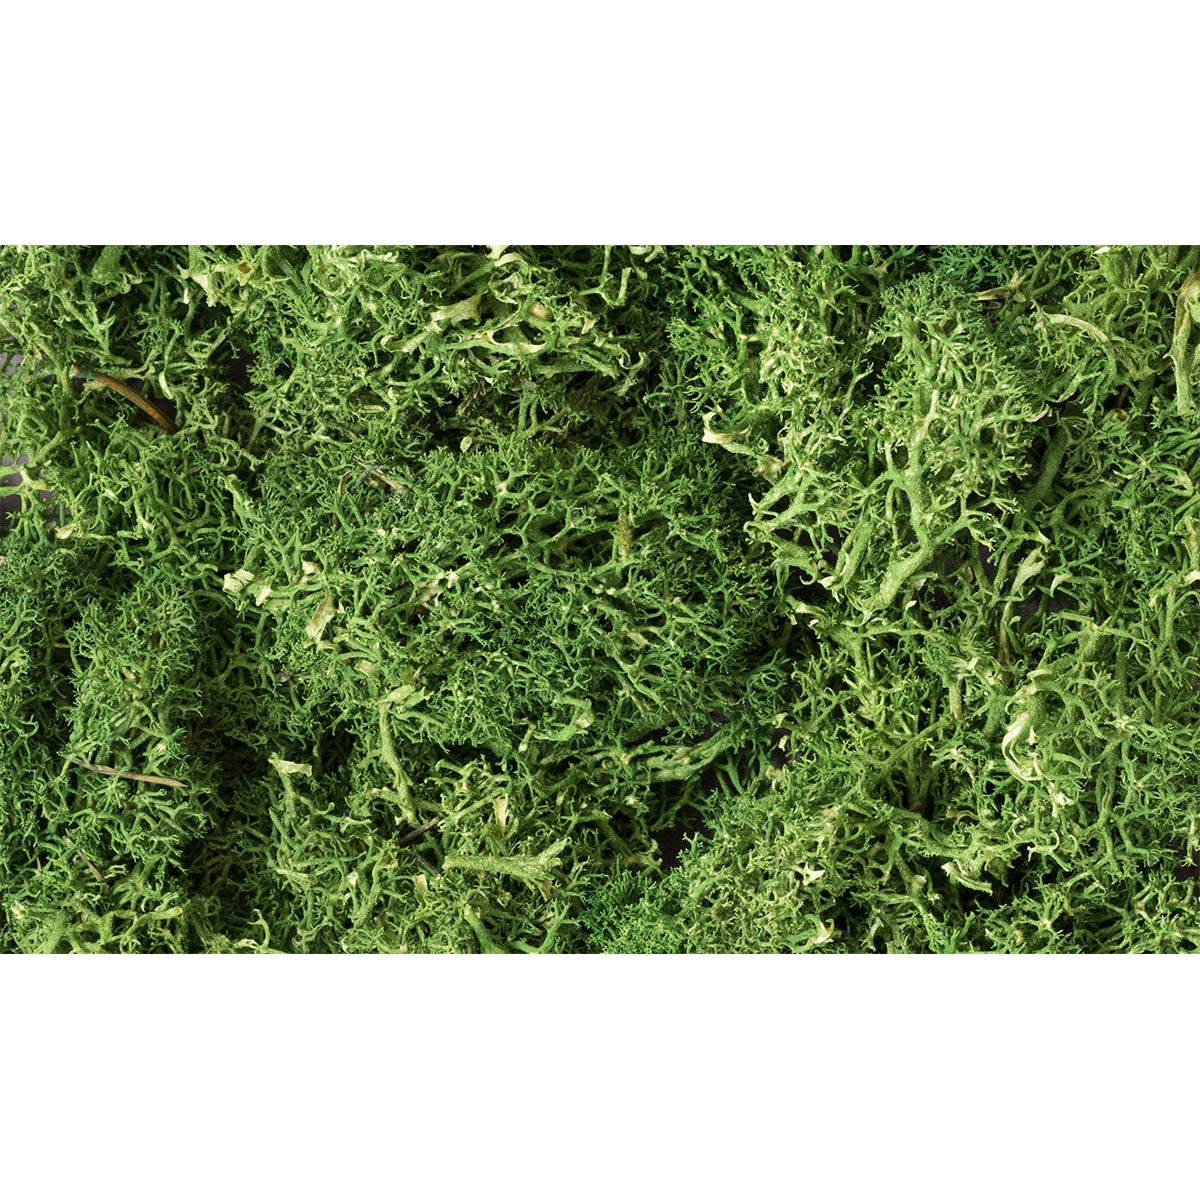 Woodland Scenics Lichen/Medium Green